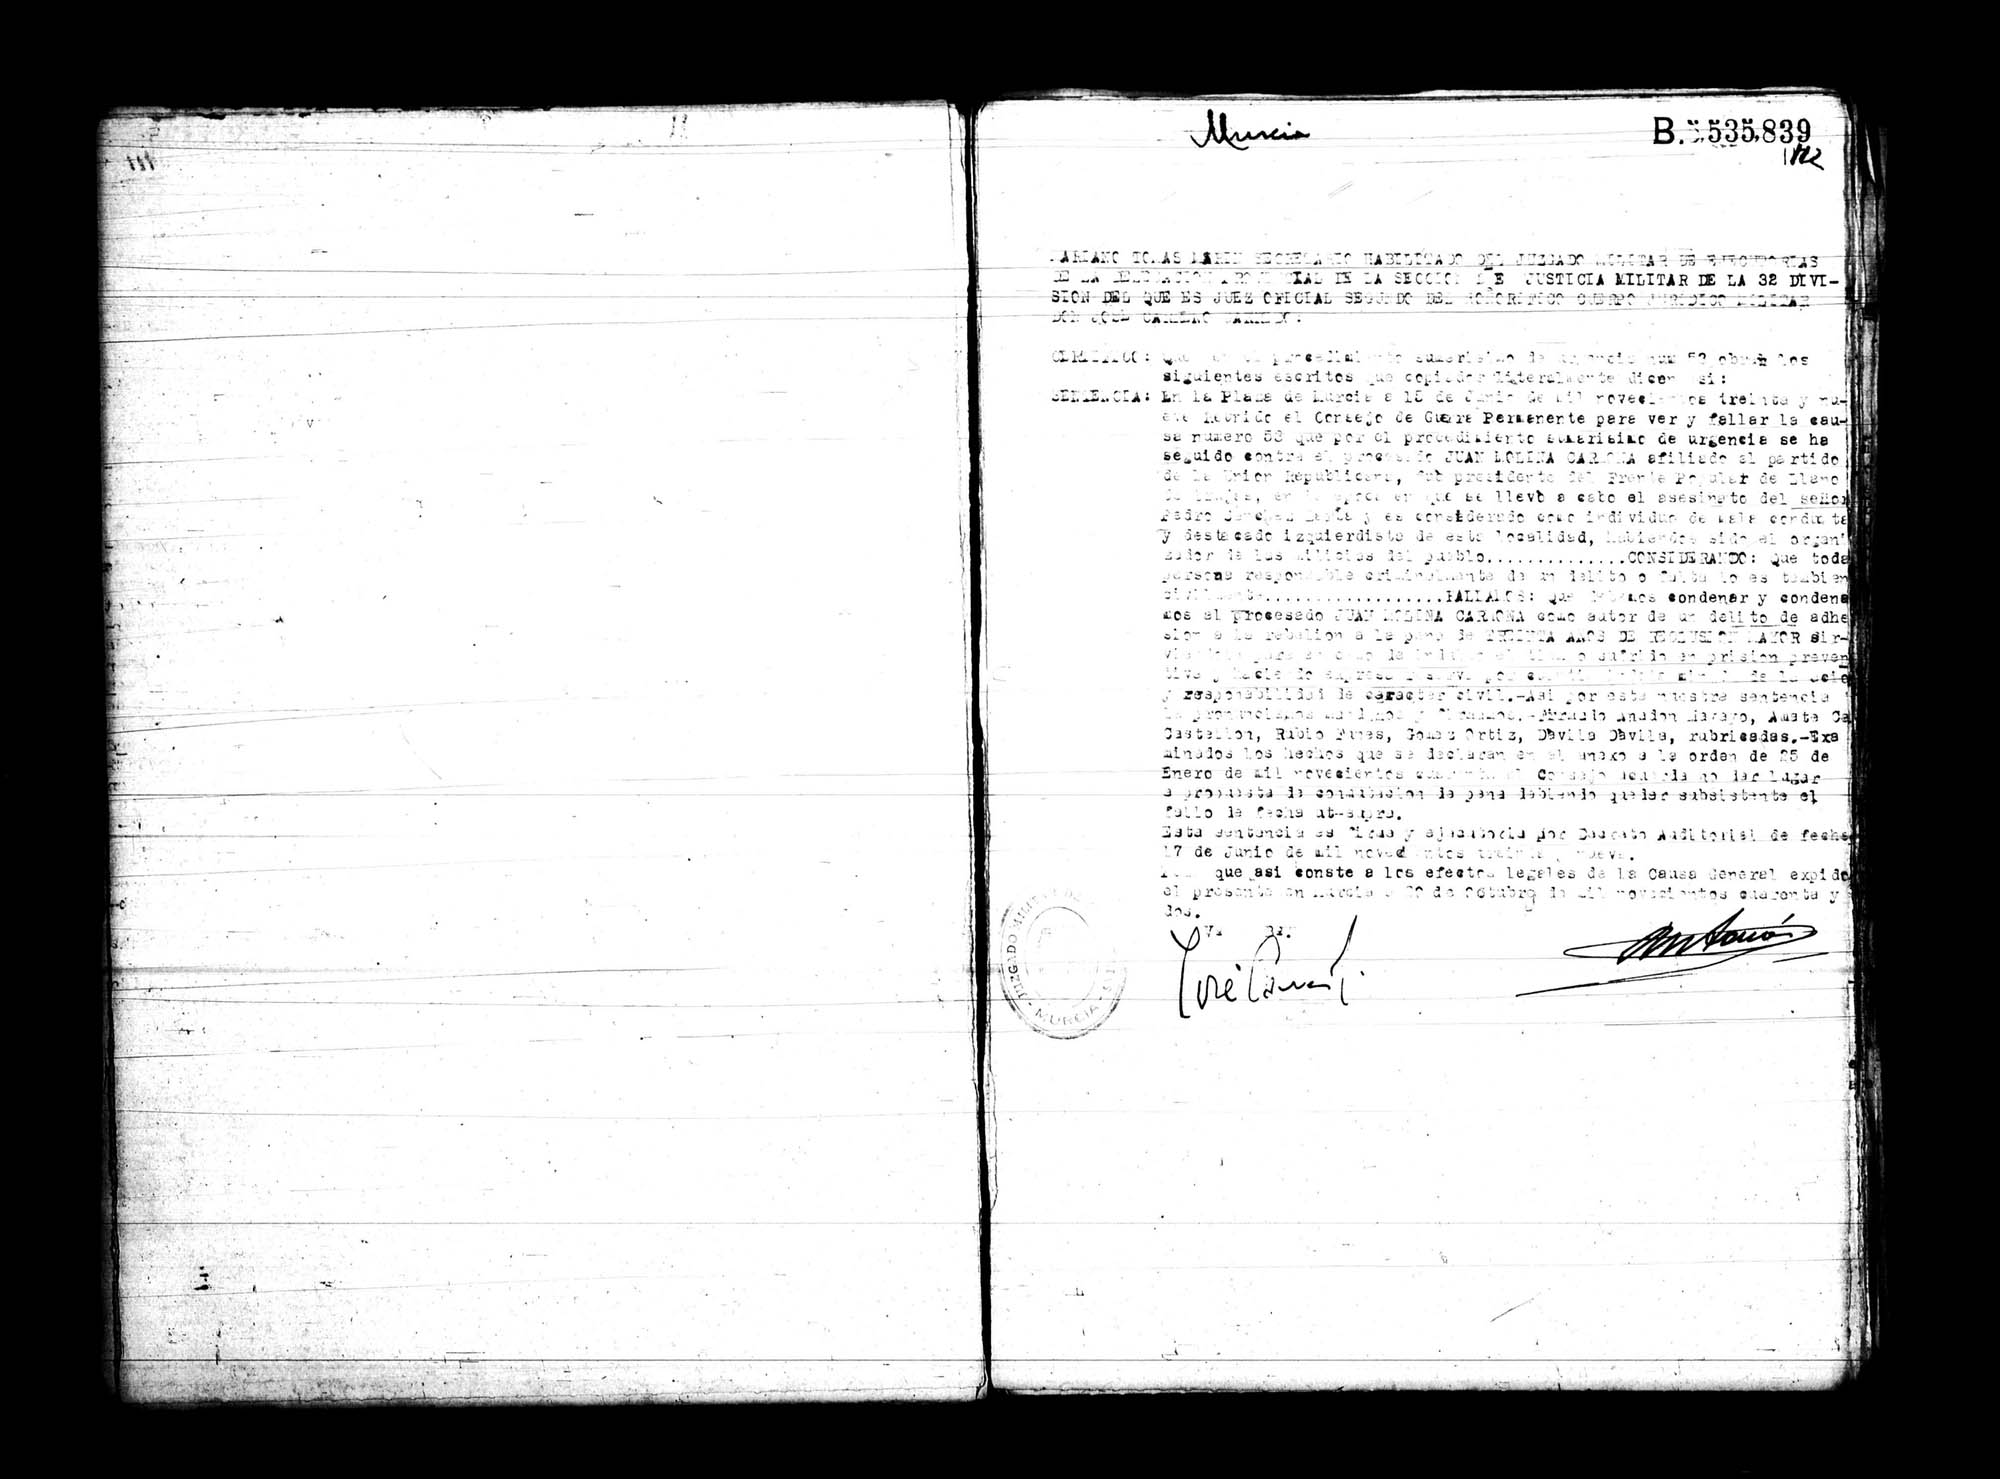 Certificado de la sentencia pronunciada contra Juan Molina Carmona, causa 53, el 15 de junio de 1939 en Murcia.